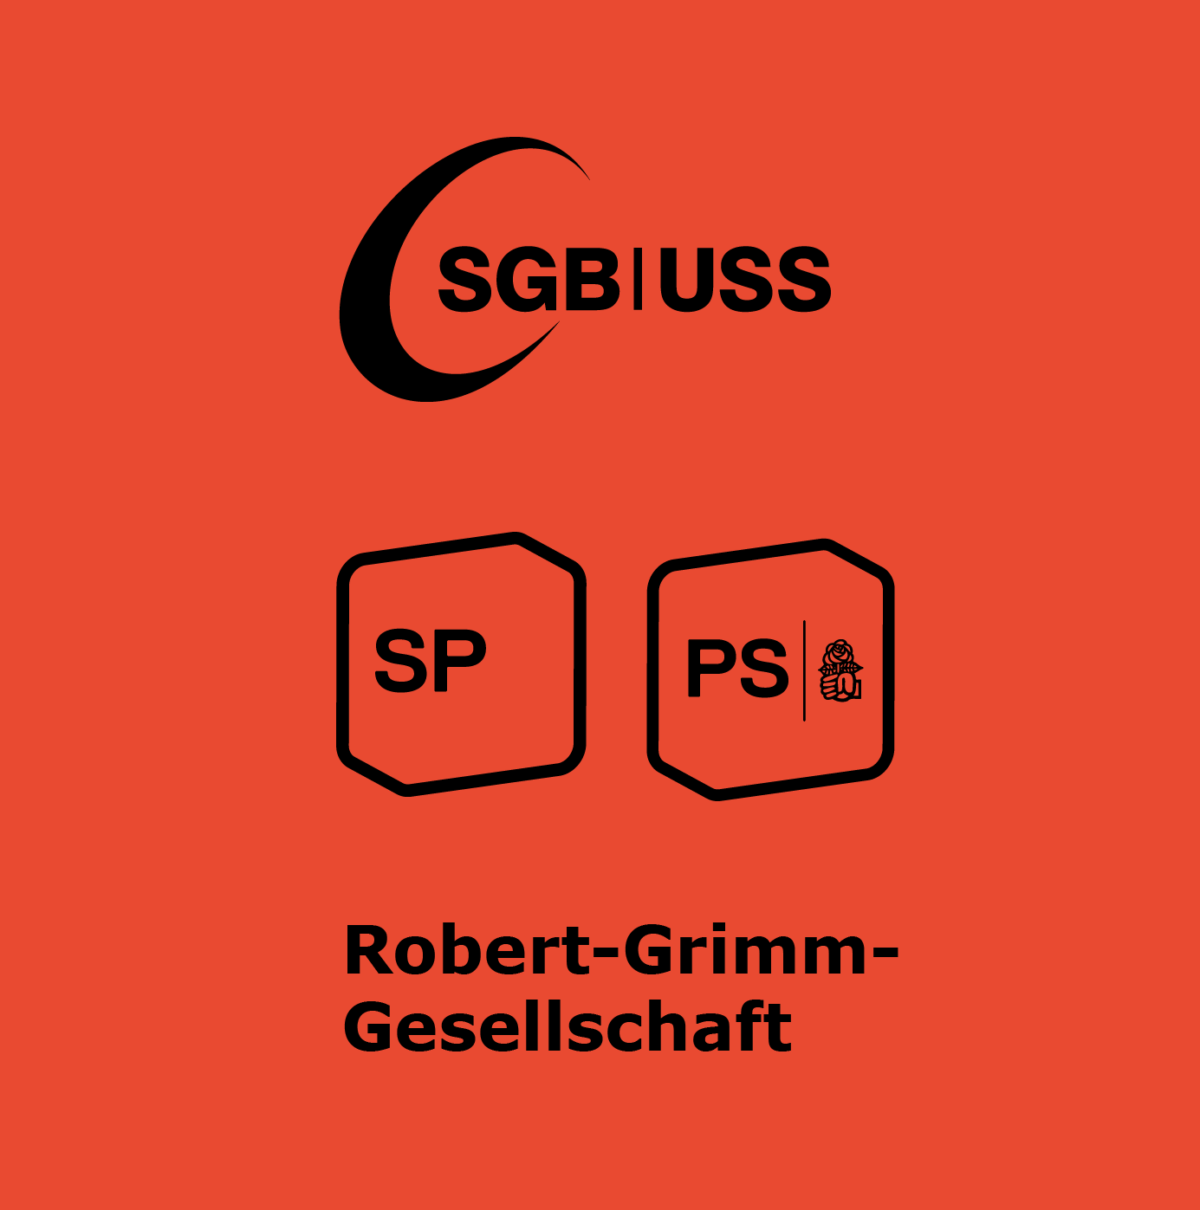 Ein gemeinsames Projekt von SGB, SP und Robert-Grimm-Gesellschaft. 
Un projet commun de l'USS, du PS et de la Société Robert Grimm. 
Un progetto congiunto dell'USS, PS e Robert Grimm Gesellschaft. 